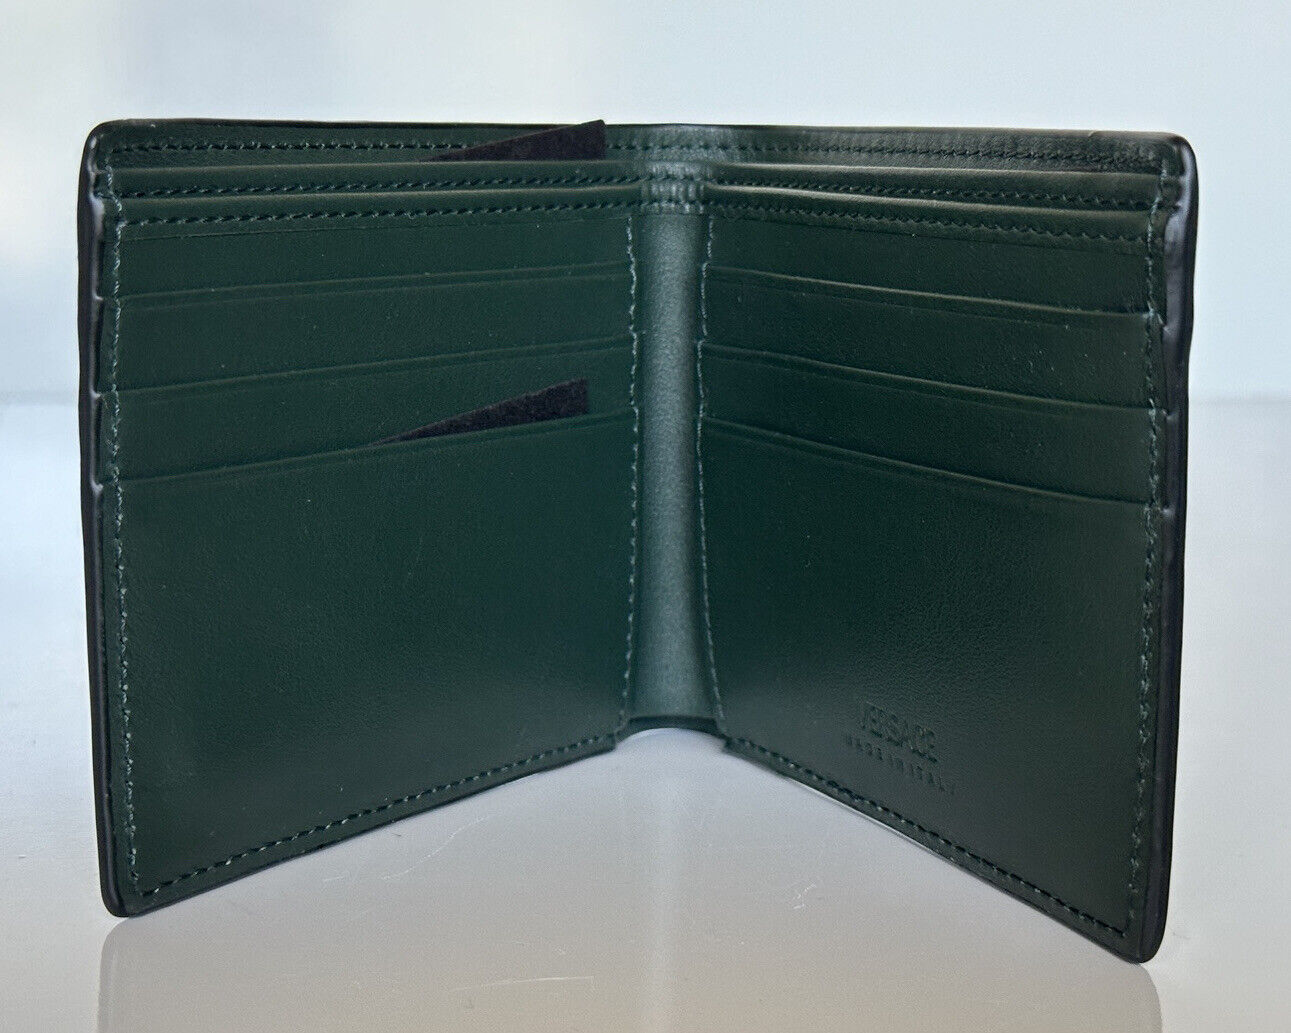 NWT 425 $ Versace Embedded Medusa Accents Geldbörse aus grünem Kalbsleder, hergestellt in Italien 